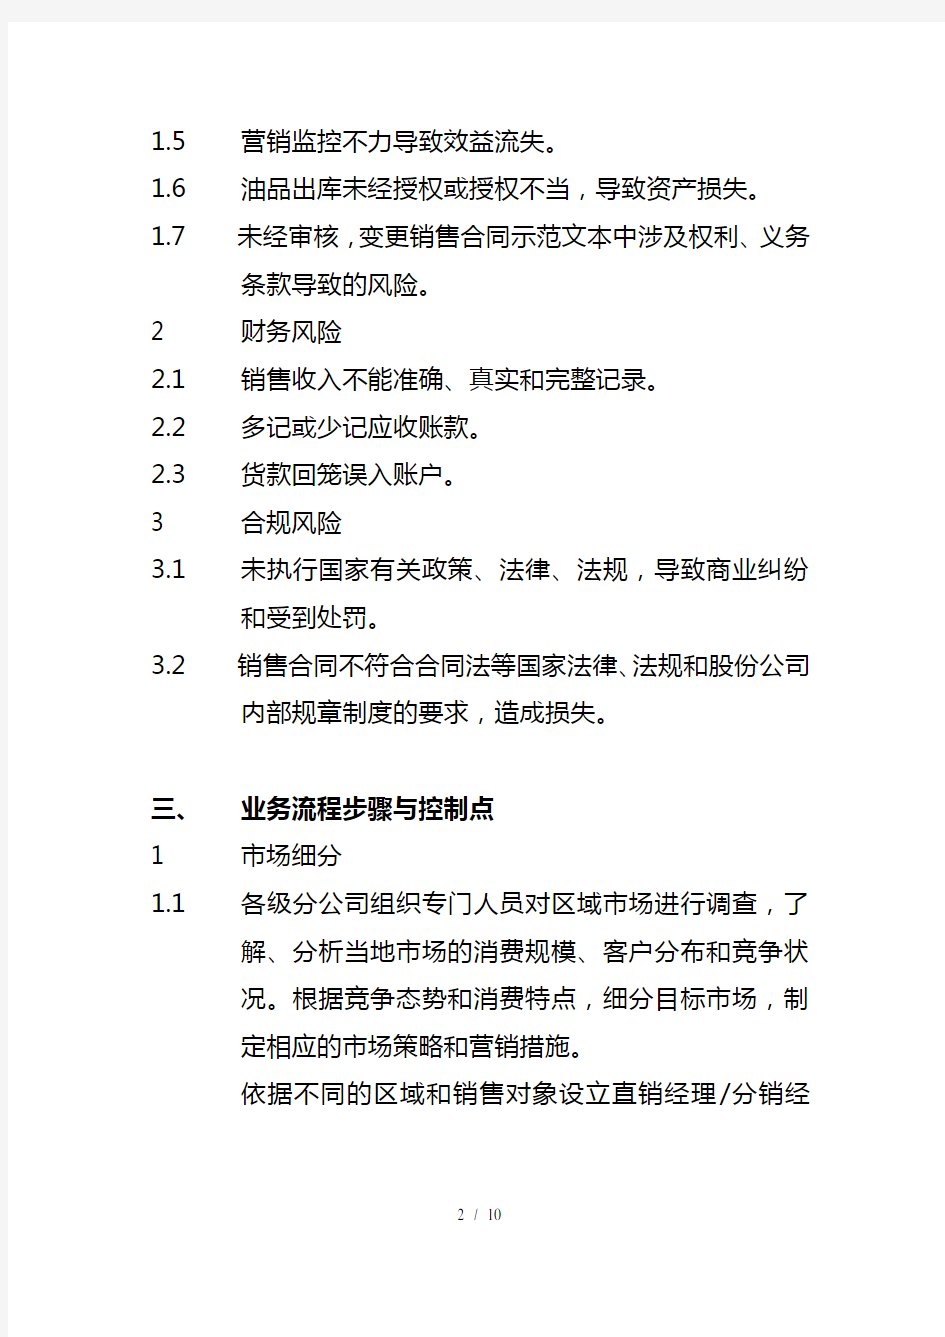 中国石化公司内部控制与业务流程汇总74